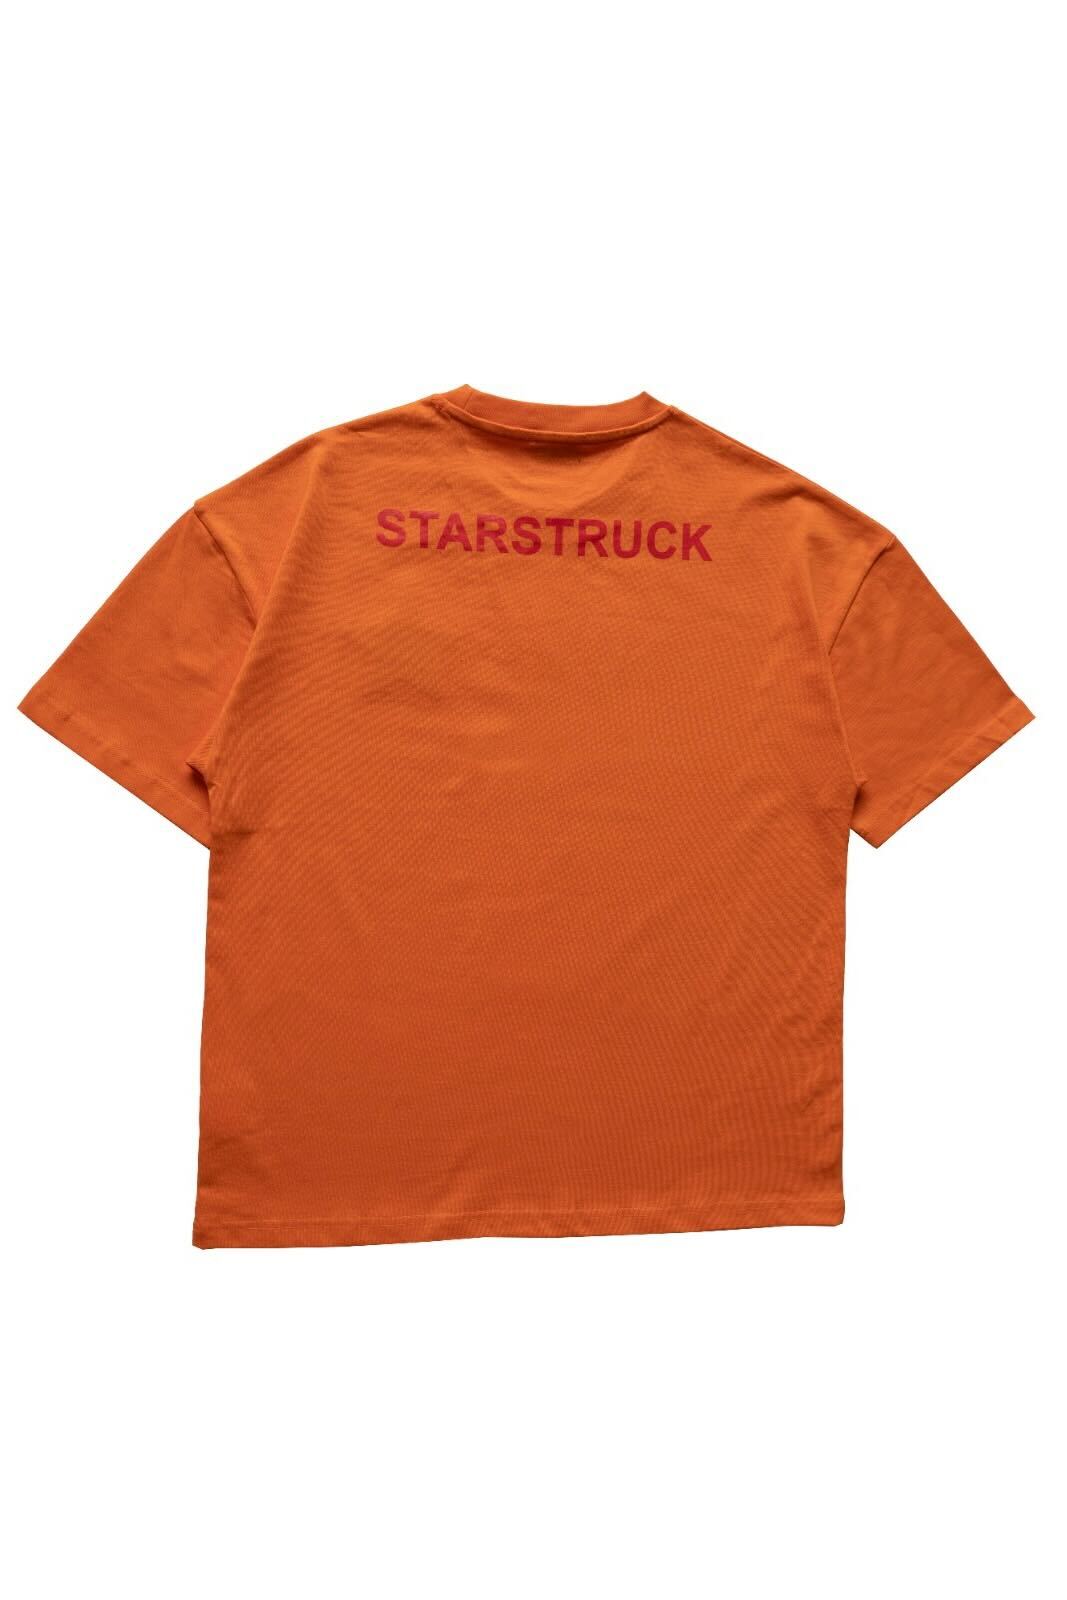 Starstruck Essentials - Orange